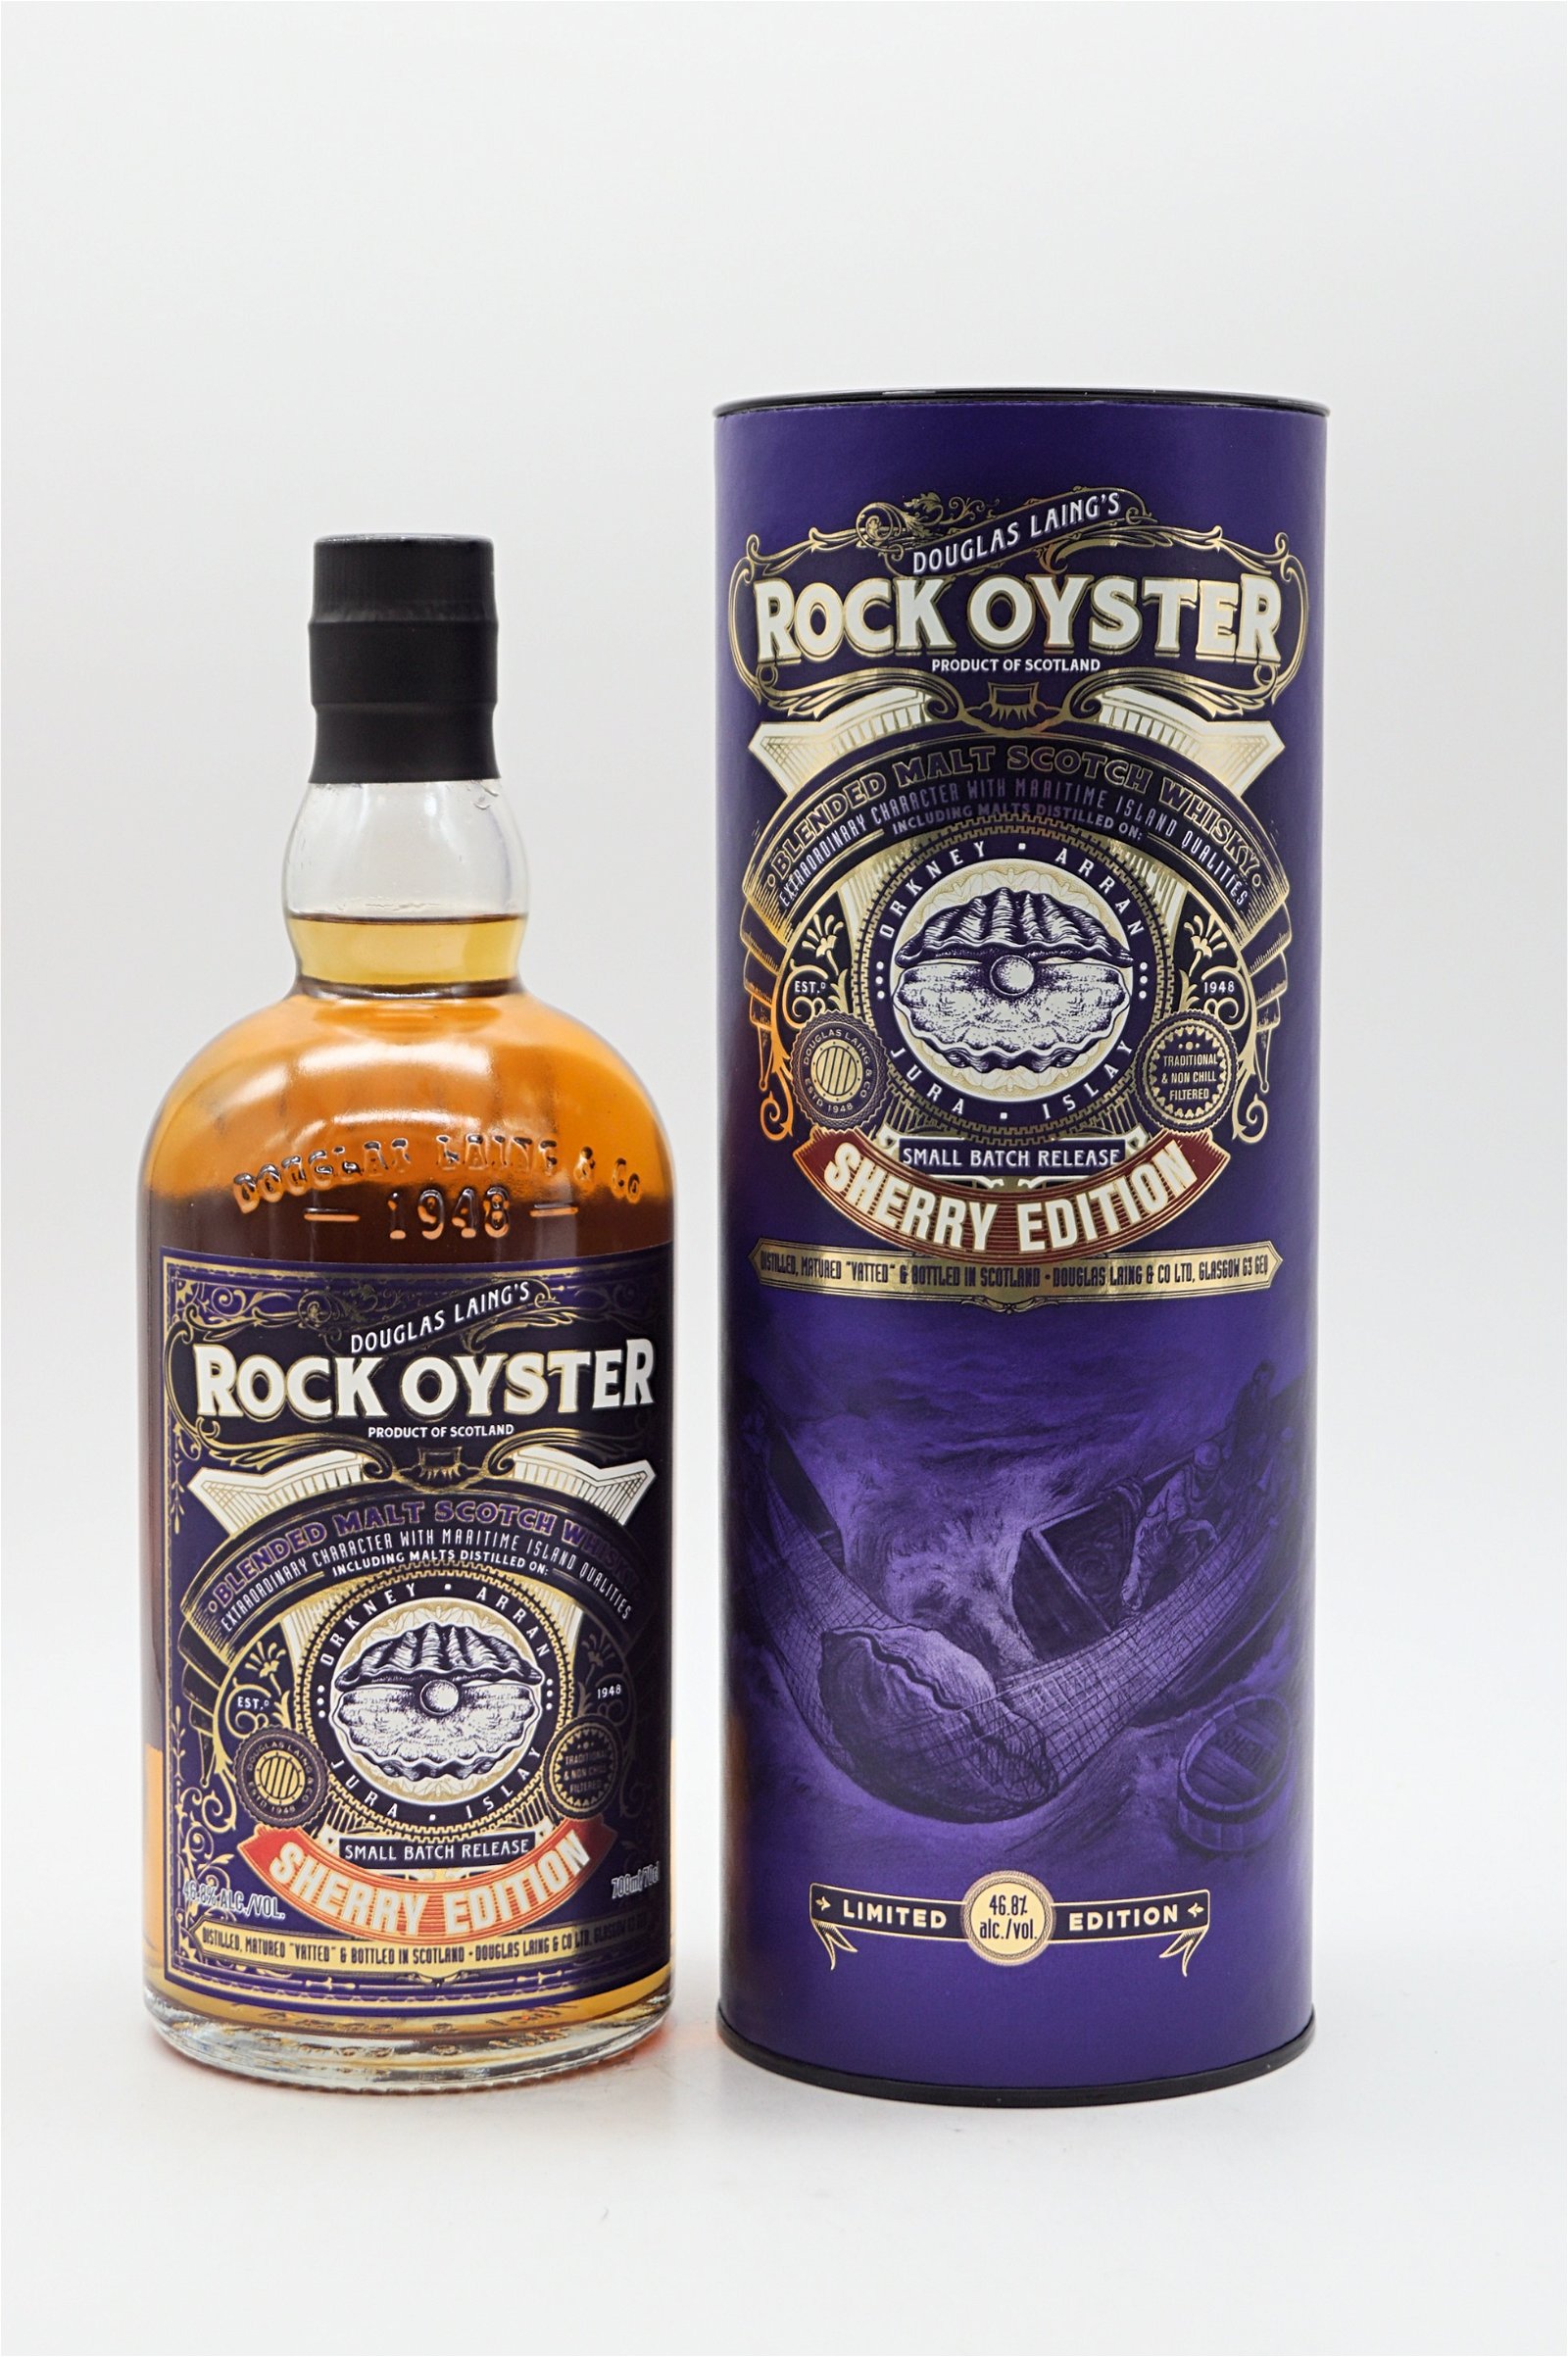 Rock Oyster Blended Malt Scotch Sherry Edition